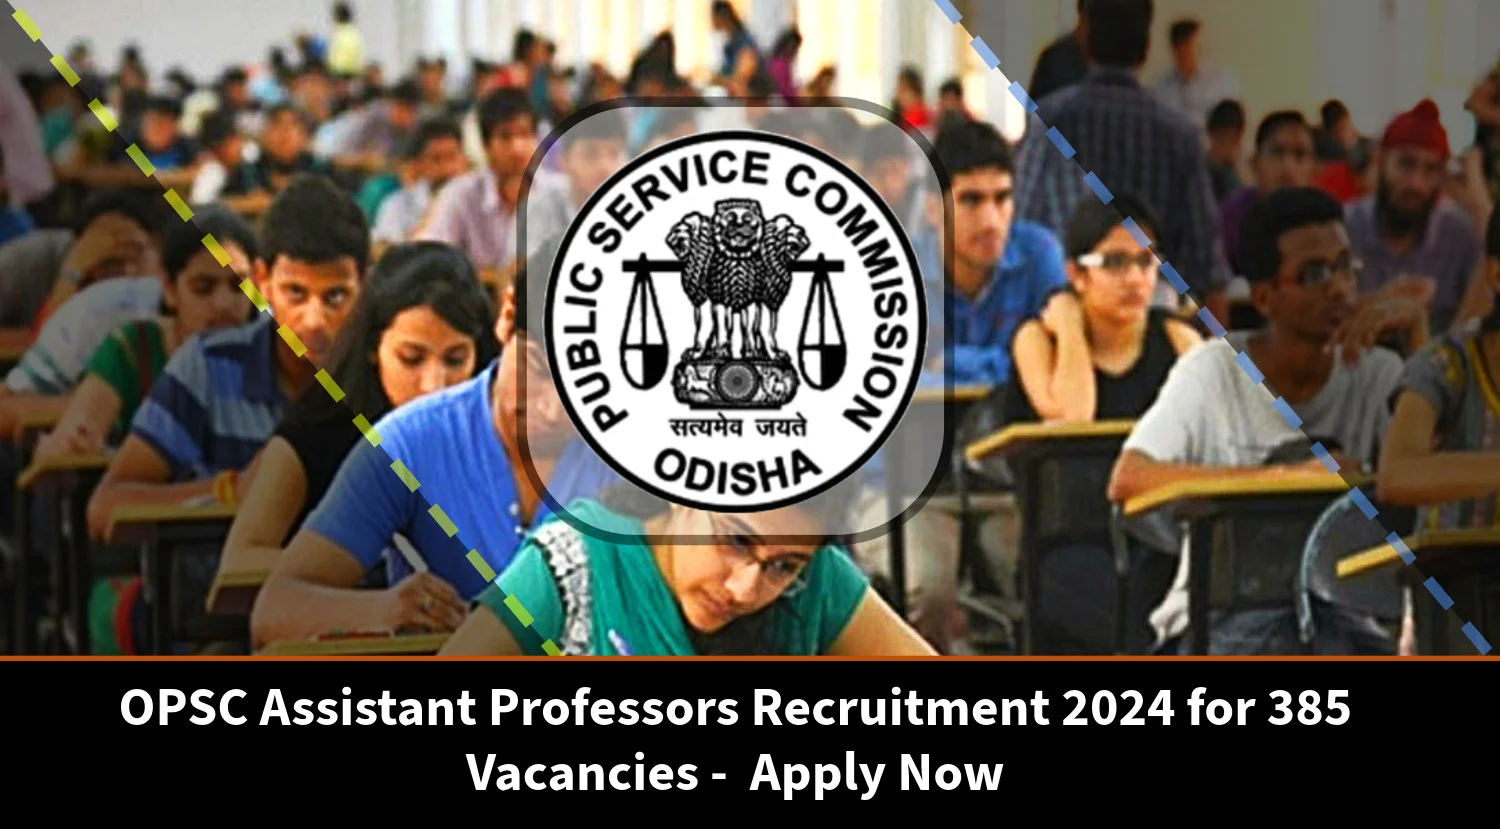 OPSC Assistant Professors Recruitment 2024 for 385 Vacancies